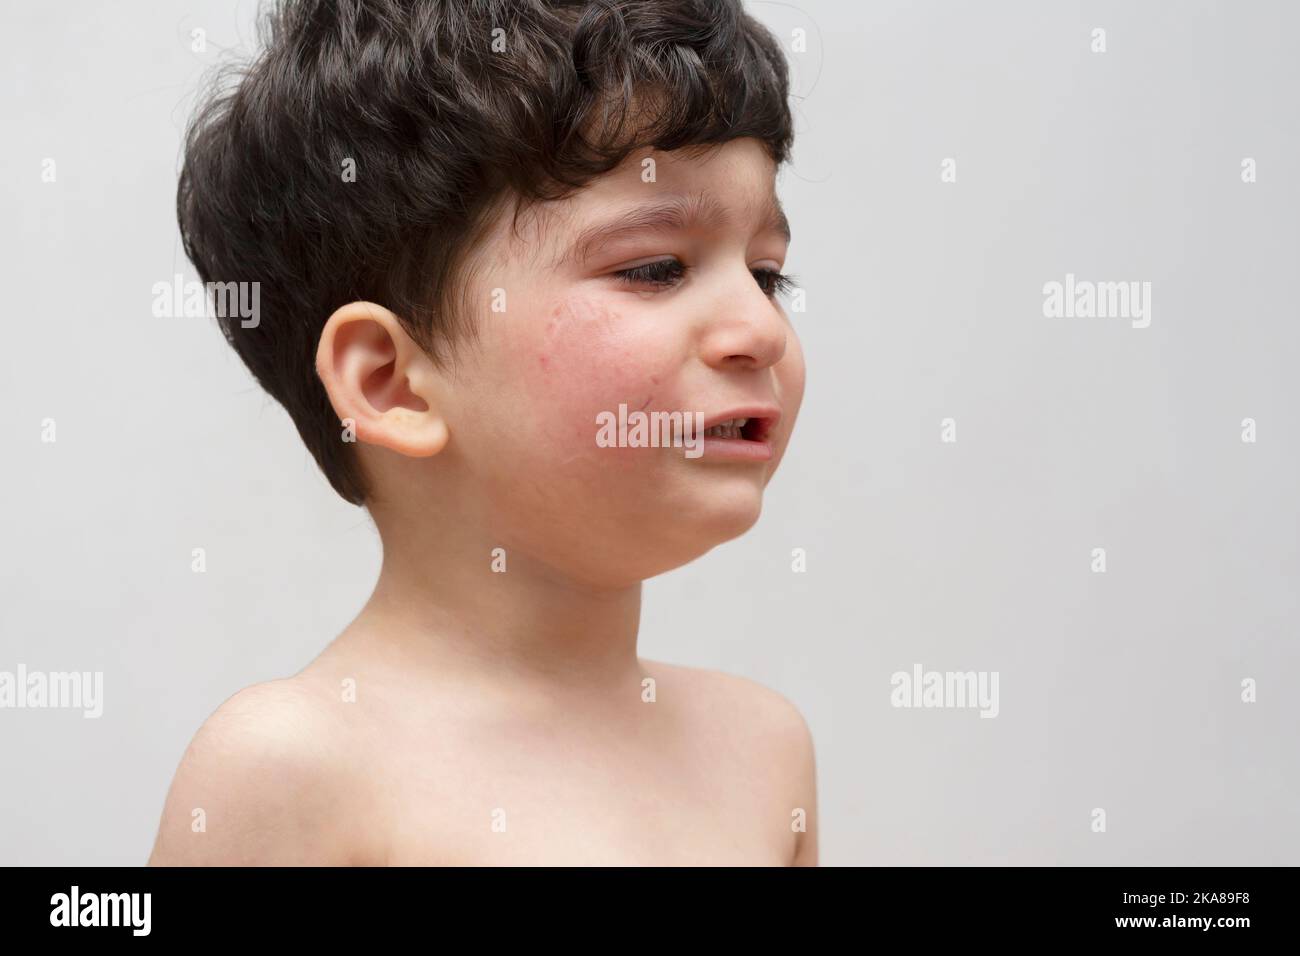 Ritratto di un bambino piangente morso la guancia da un altro bambino Foto Stock